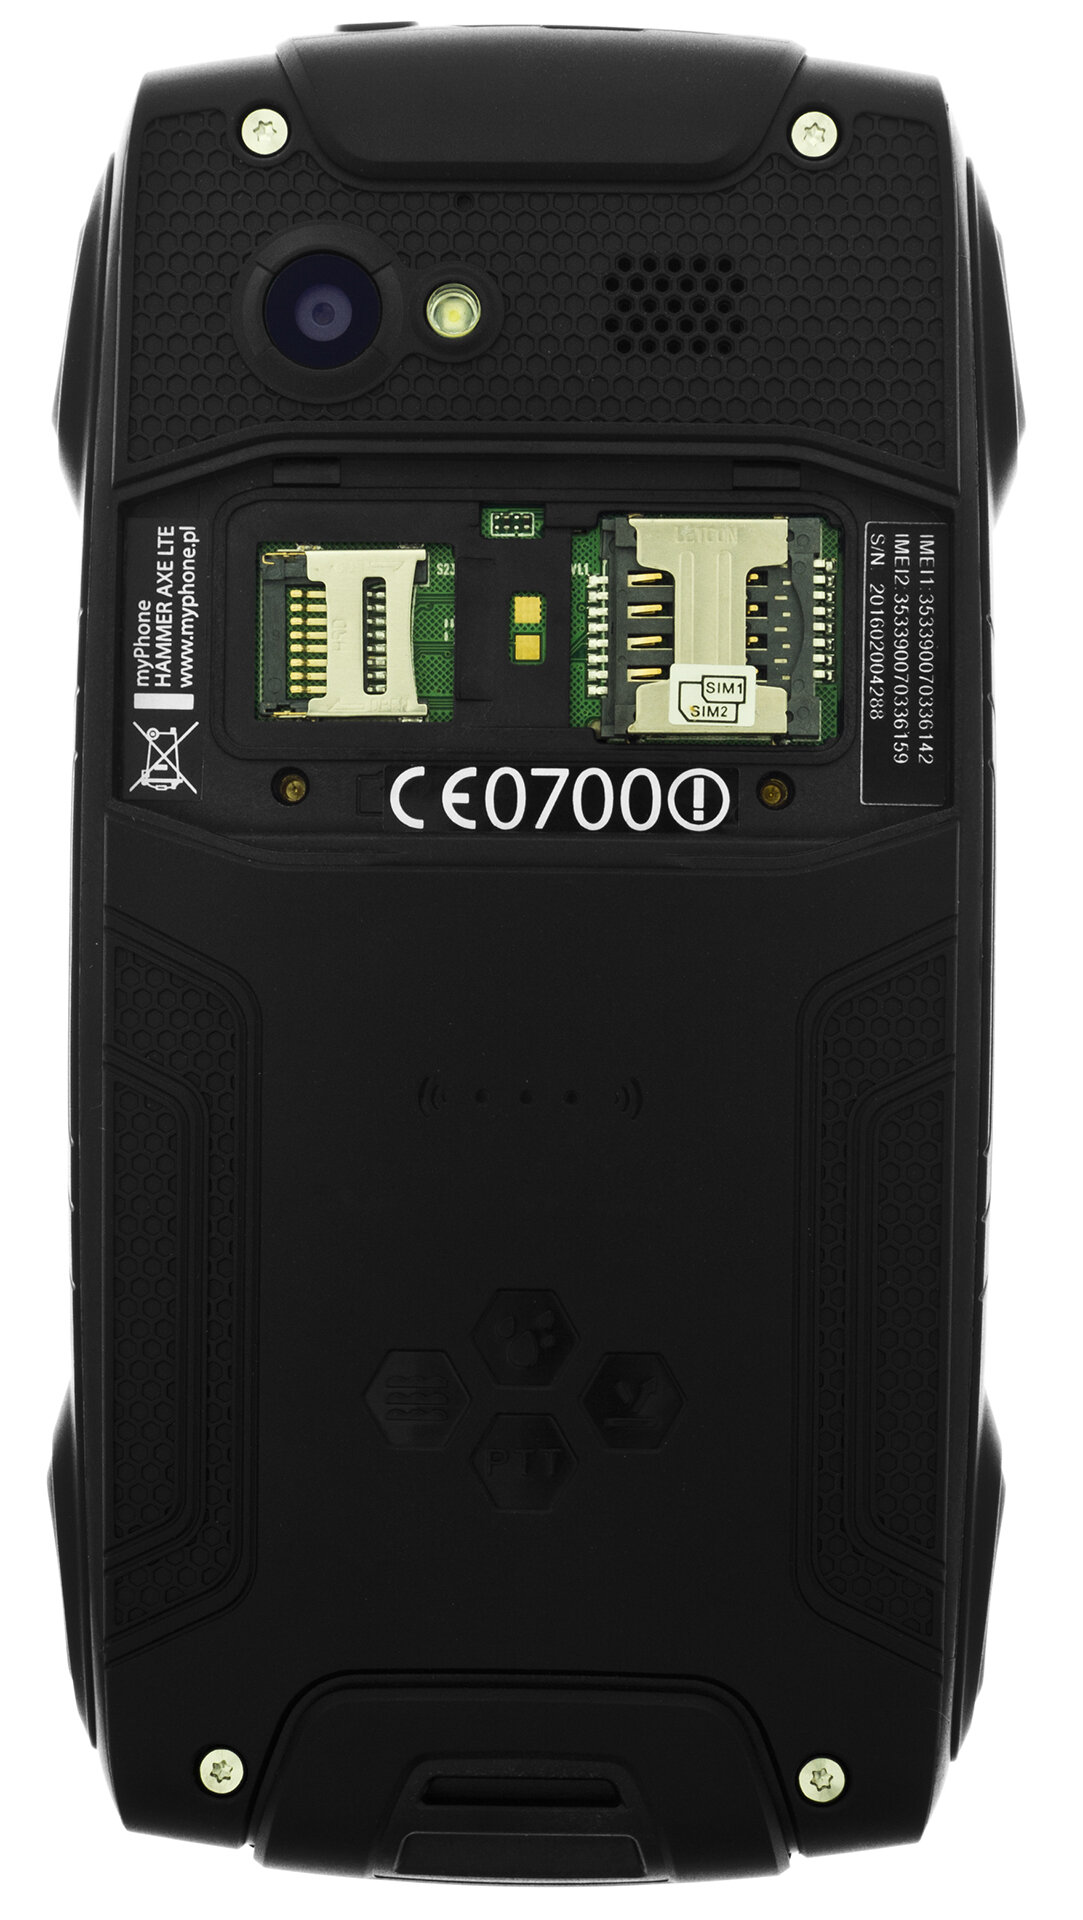 HAMMER Axe 2/16GB 4.5" Czarny Smartfon - niskie ceny i opinie w Media Expert